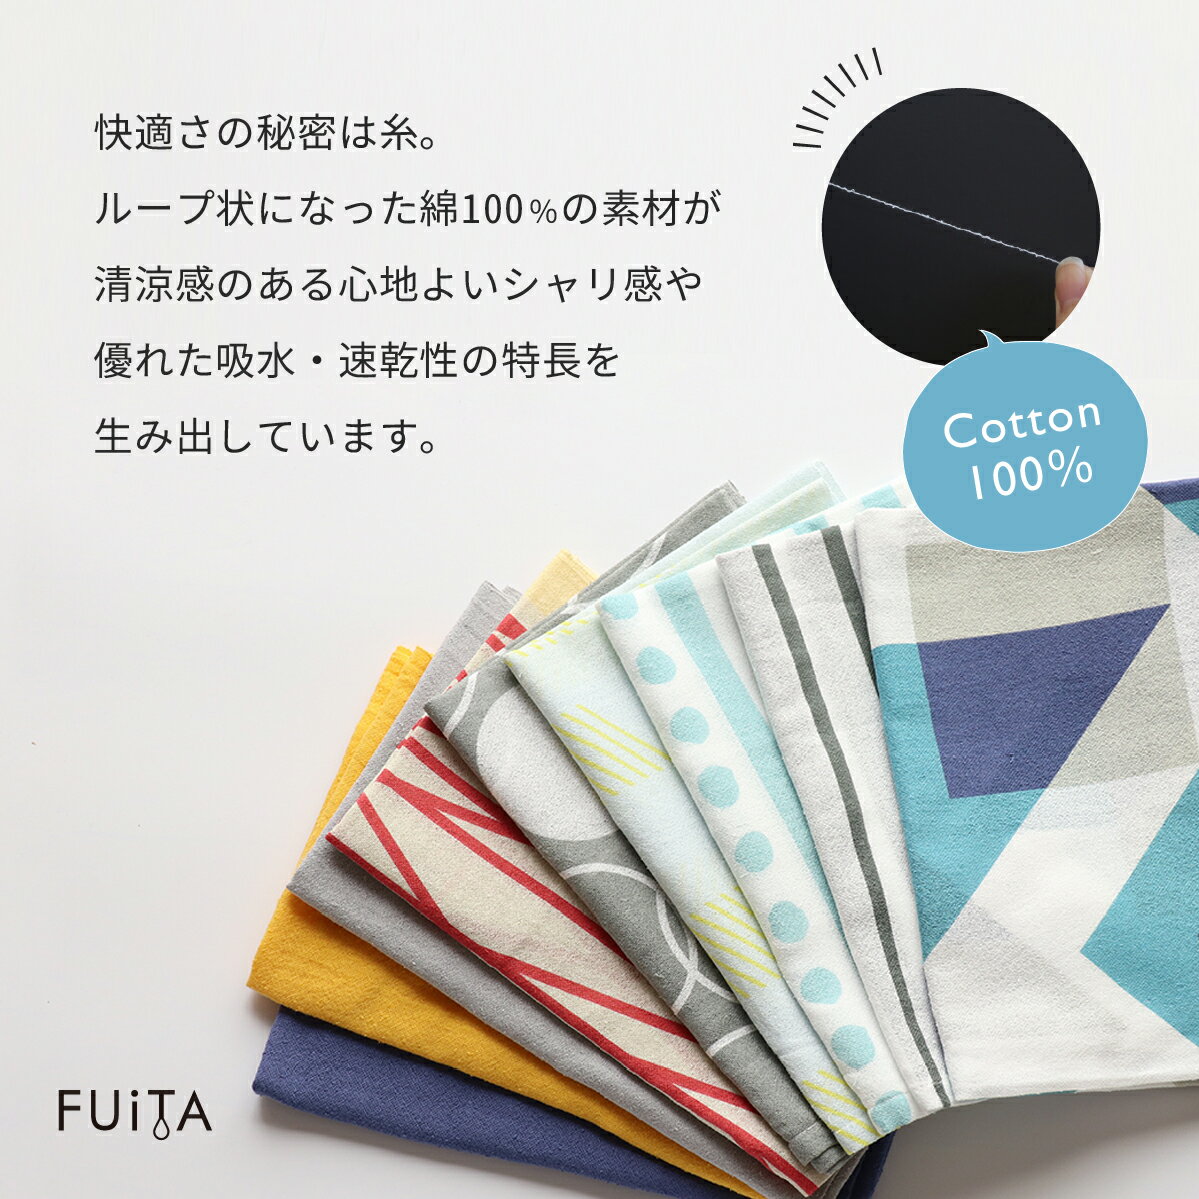 FUiTA タオル ポケット付き 綿 100% 吸水速乾 アウトドア スポーツ 極薄 0.4mm 日本製 ギフト プレゼント 2